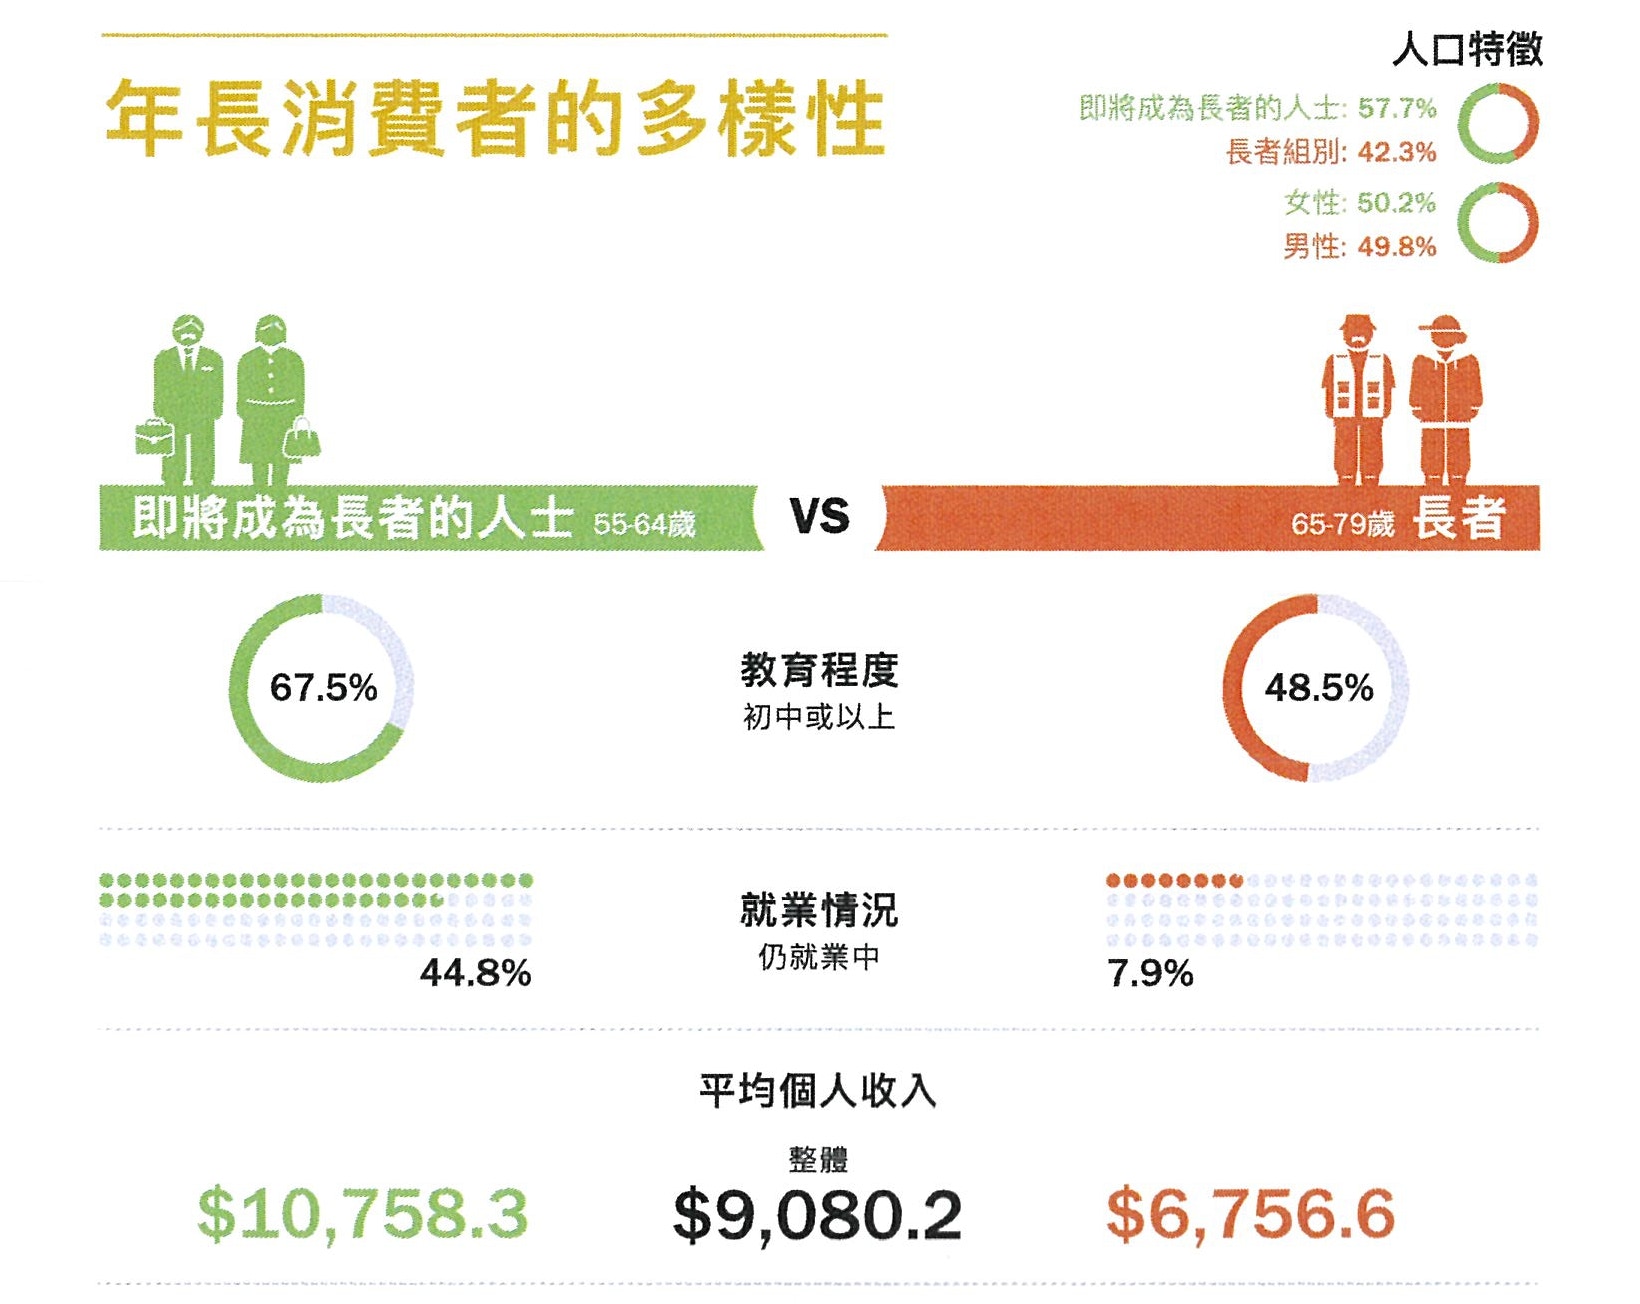 銀髮市場 消委會報告 長者月花 6300 旅遊佔非經常開支兩成 香港01 社會新聞